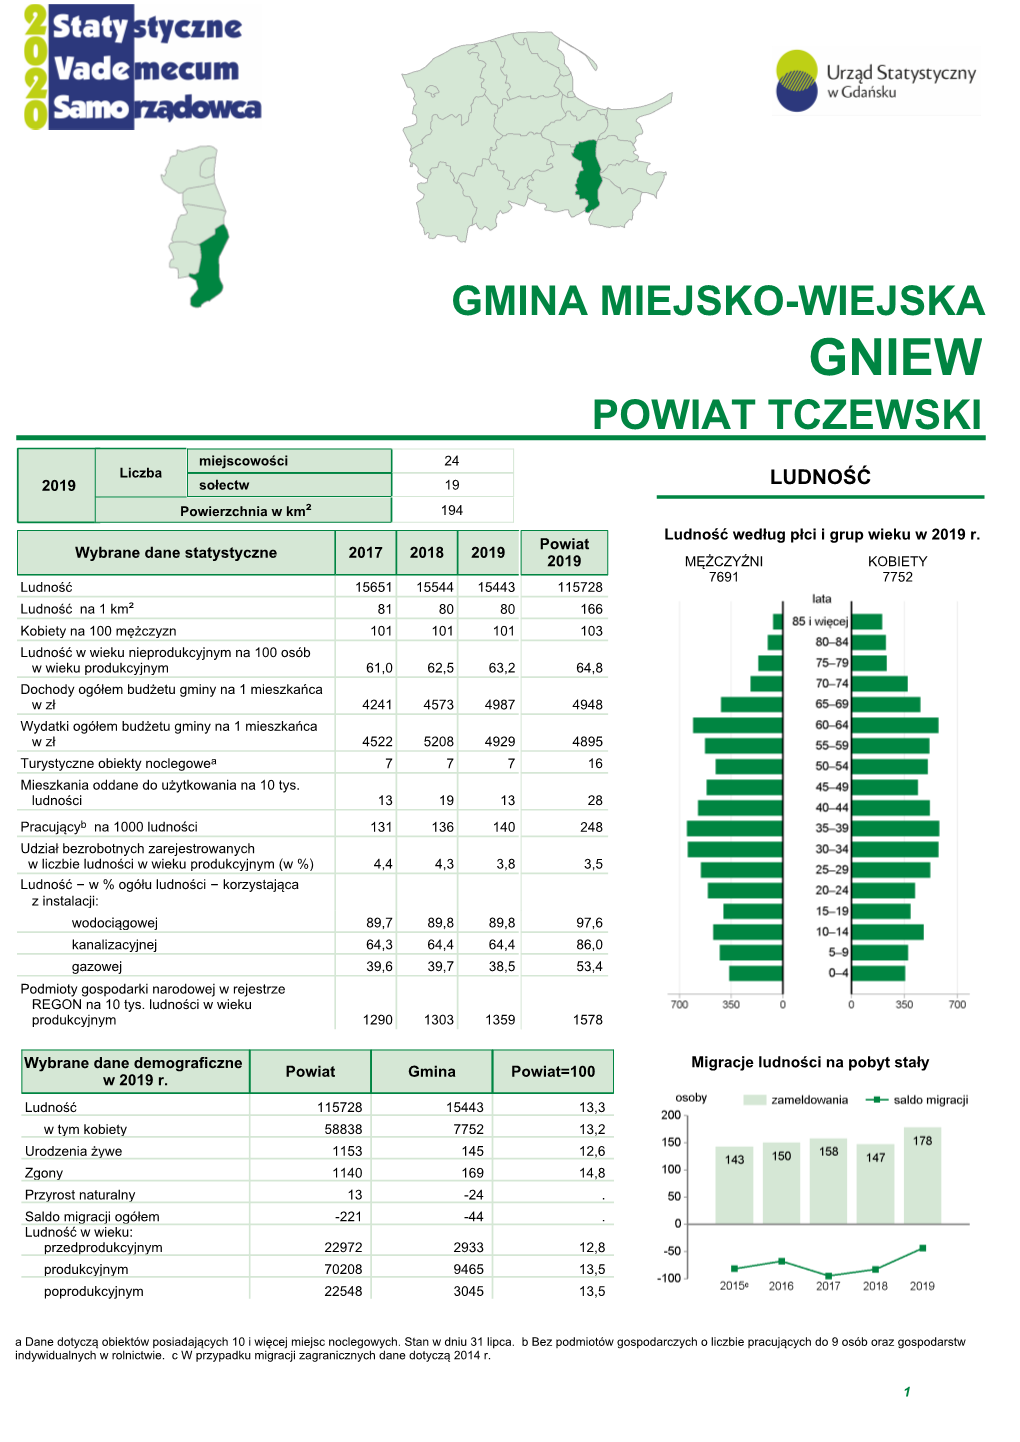 Gniew Powiat Tczewski